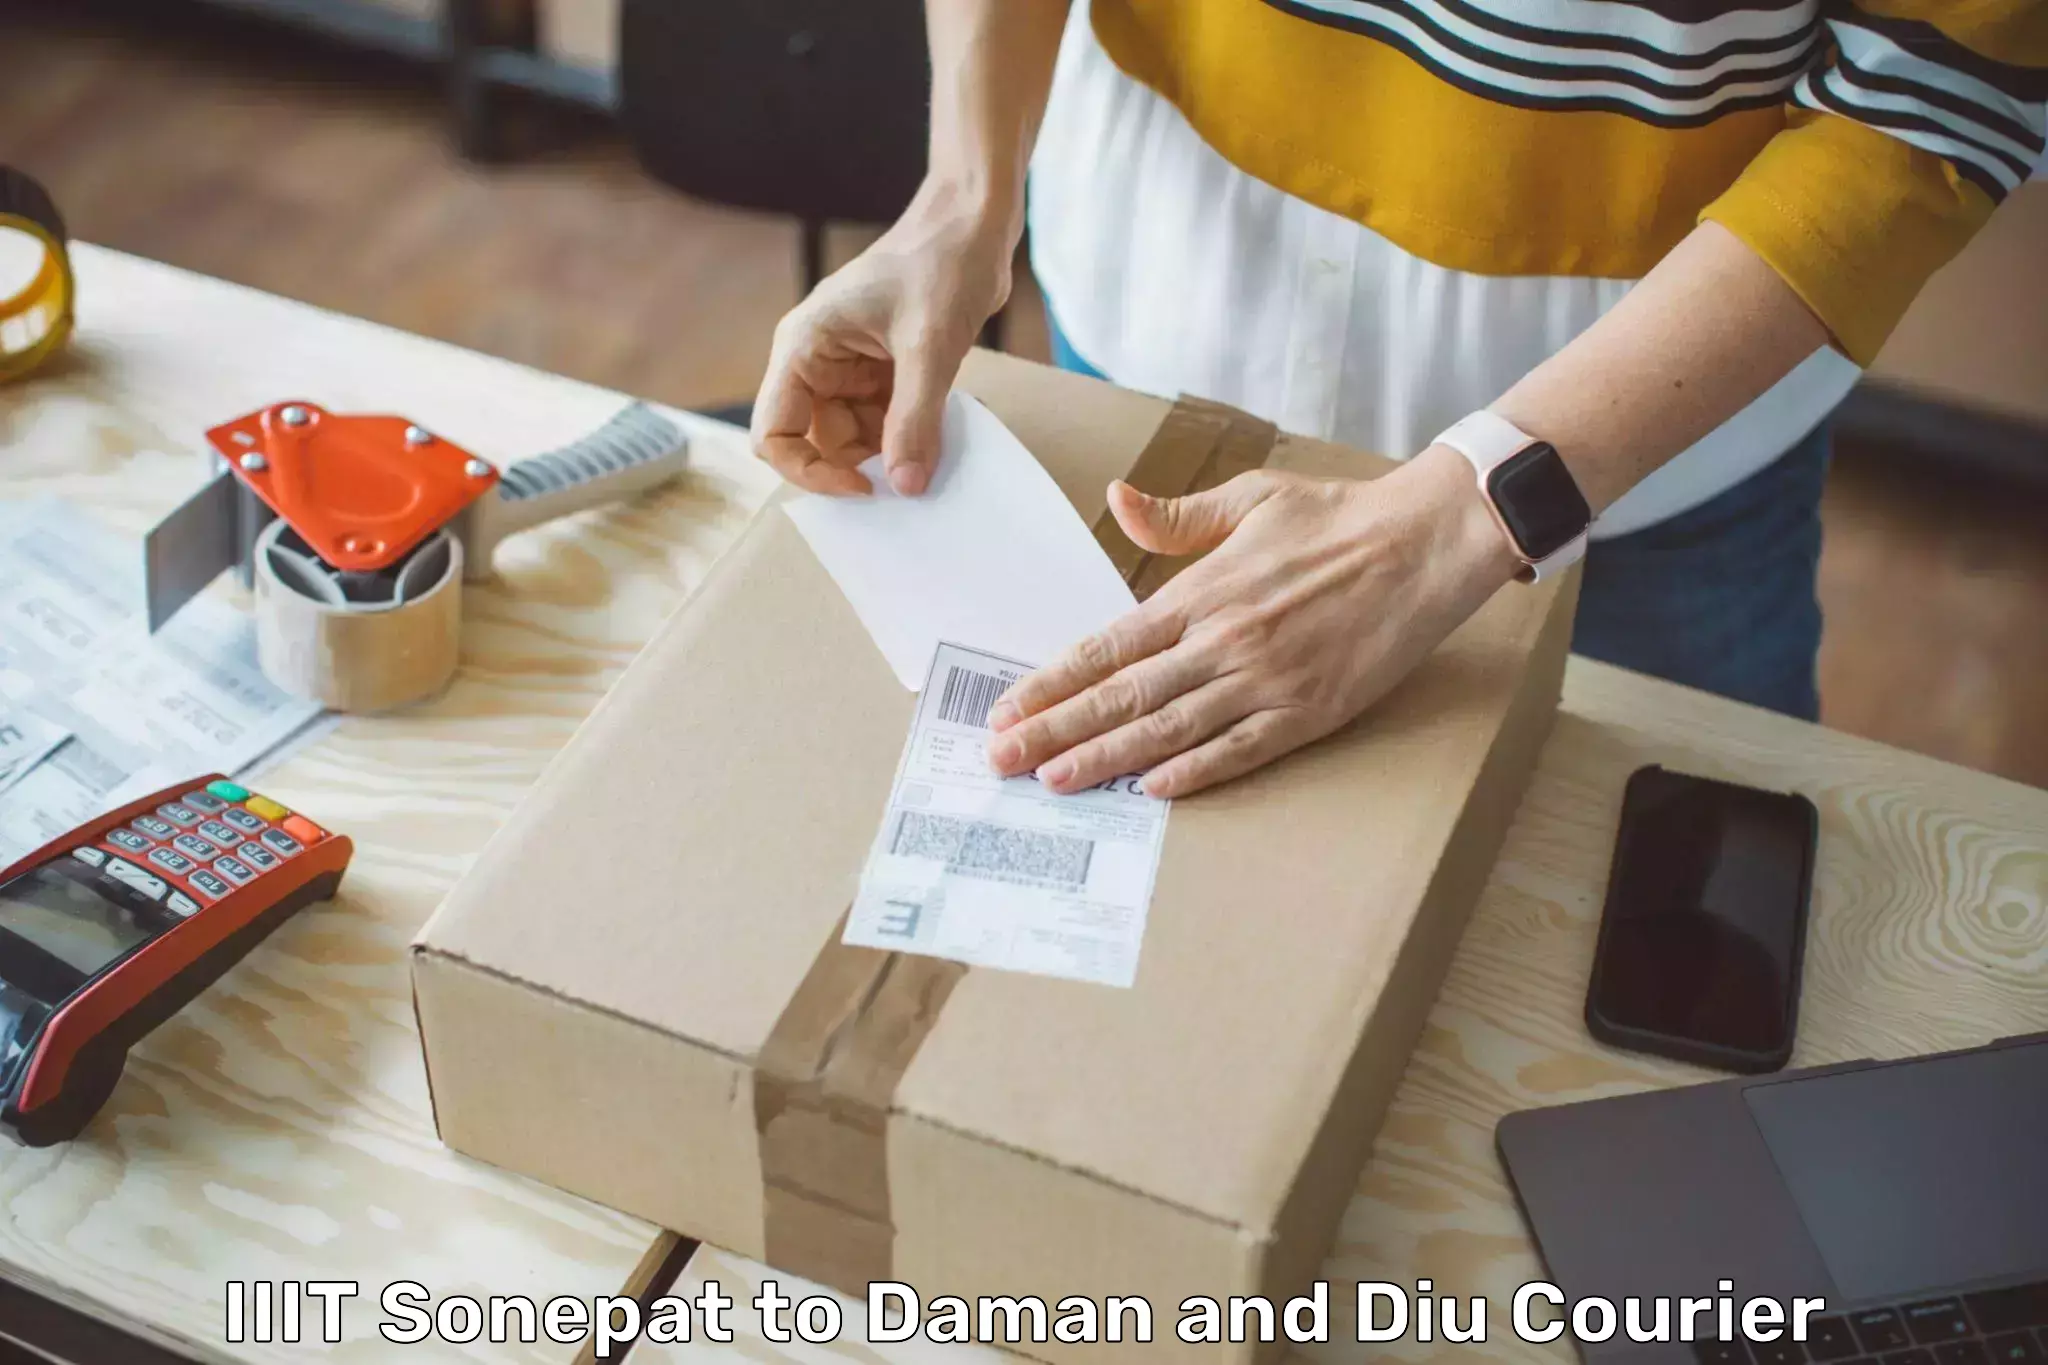 Cost-effective courier options IIIT Sonepat to Diu